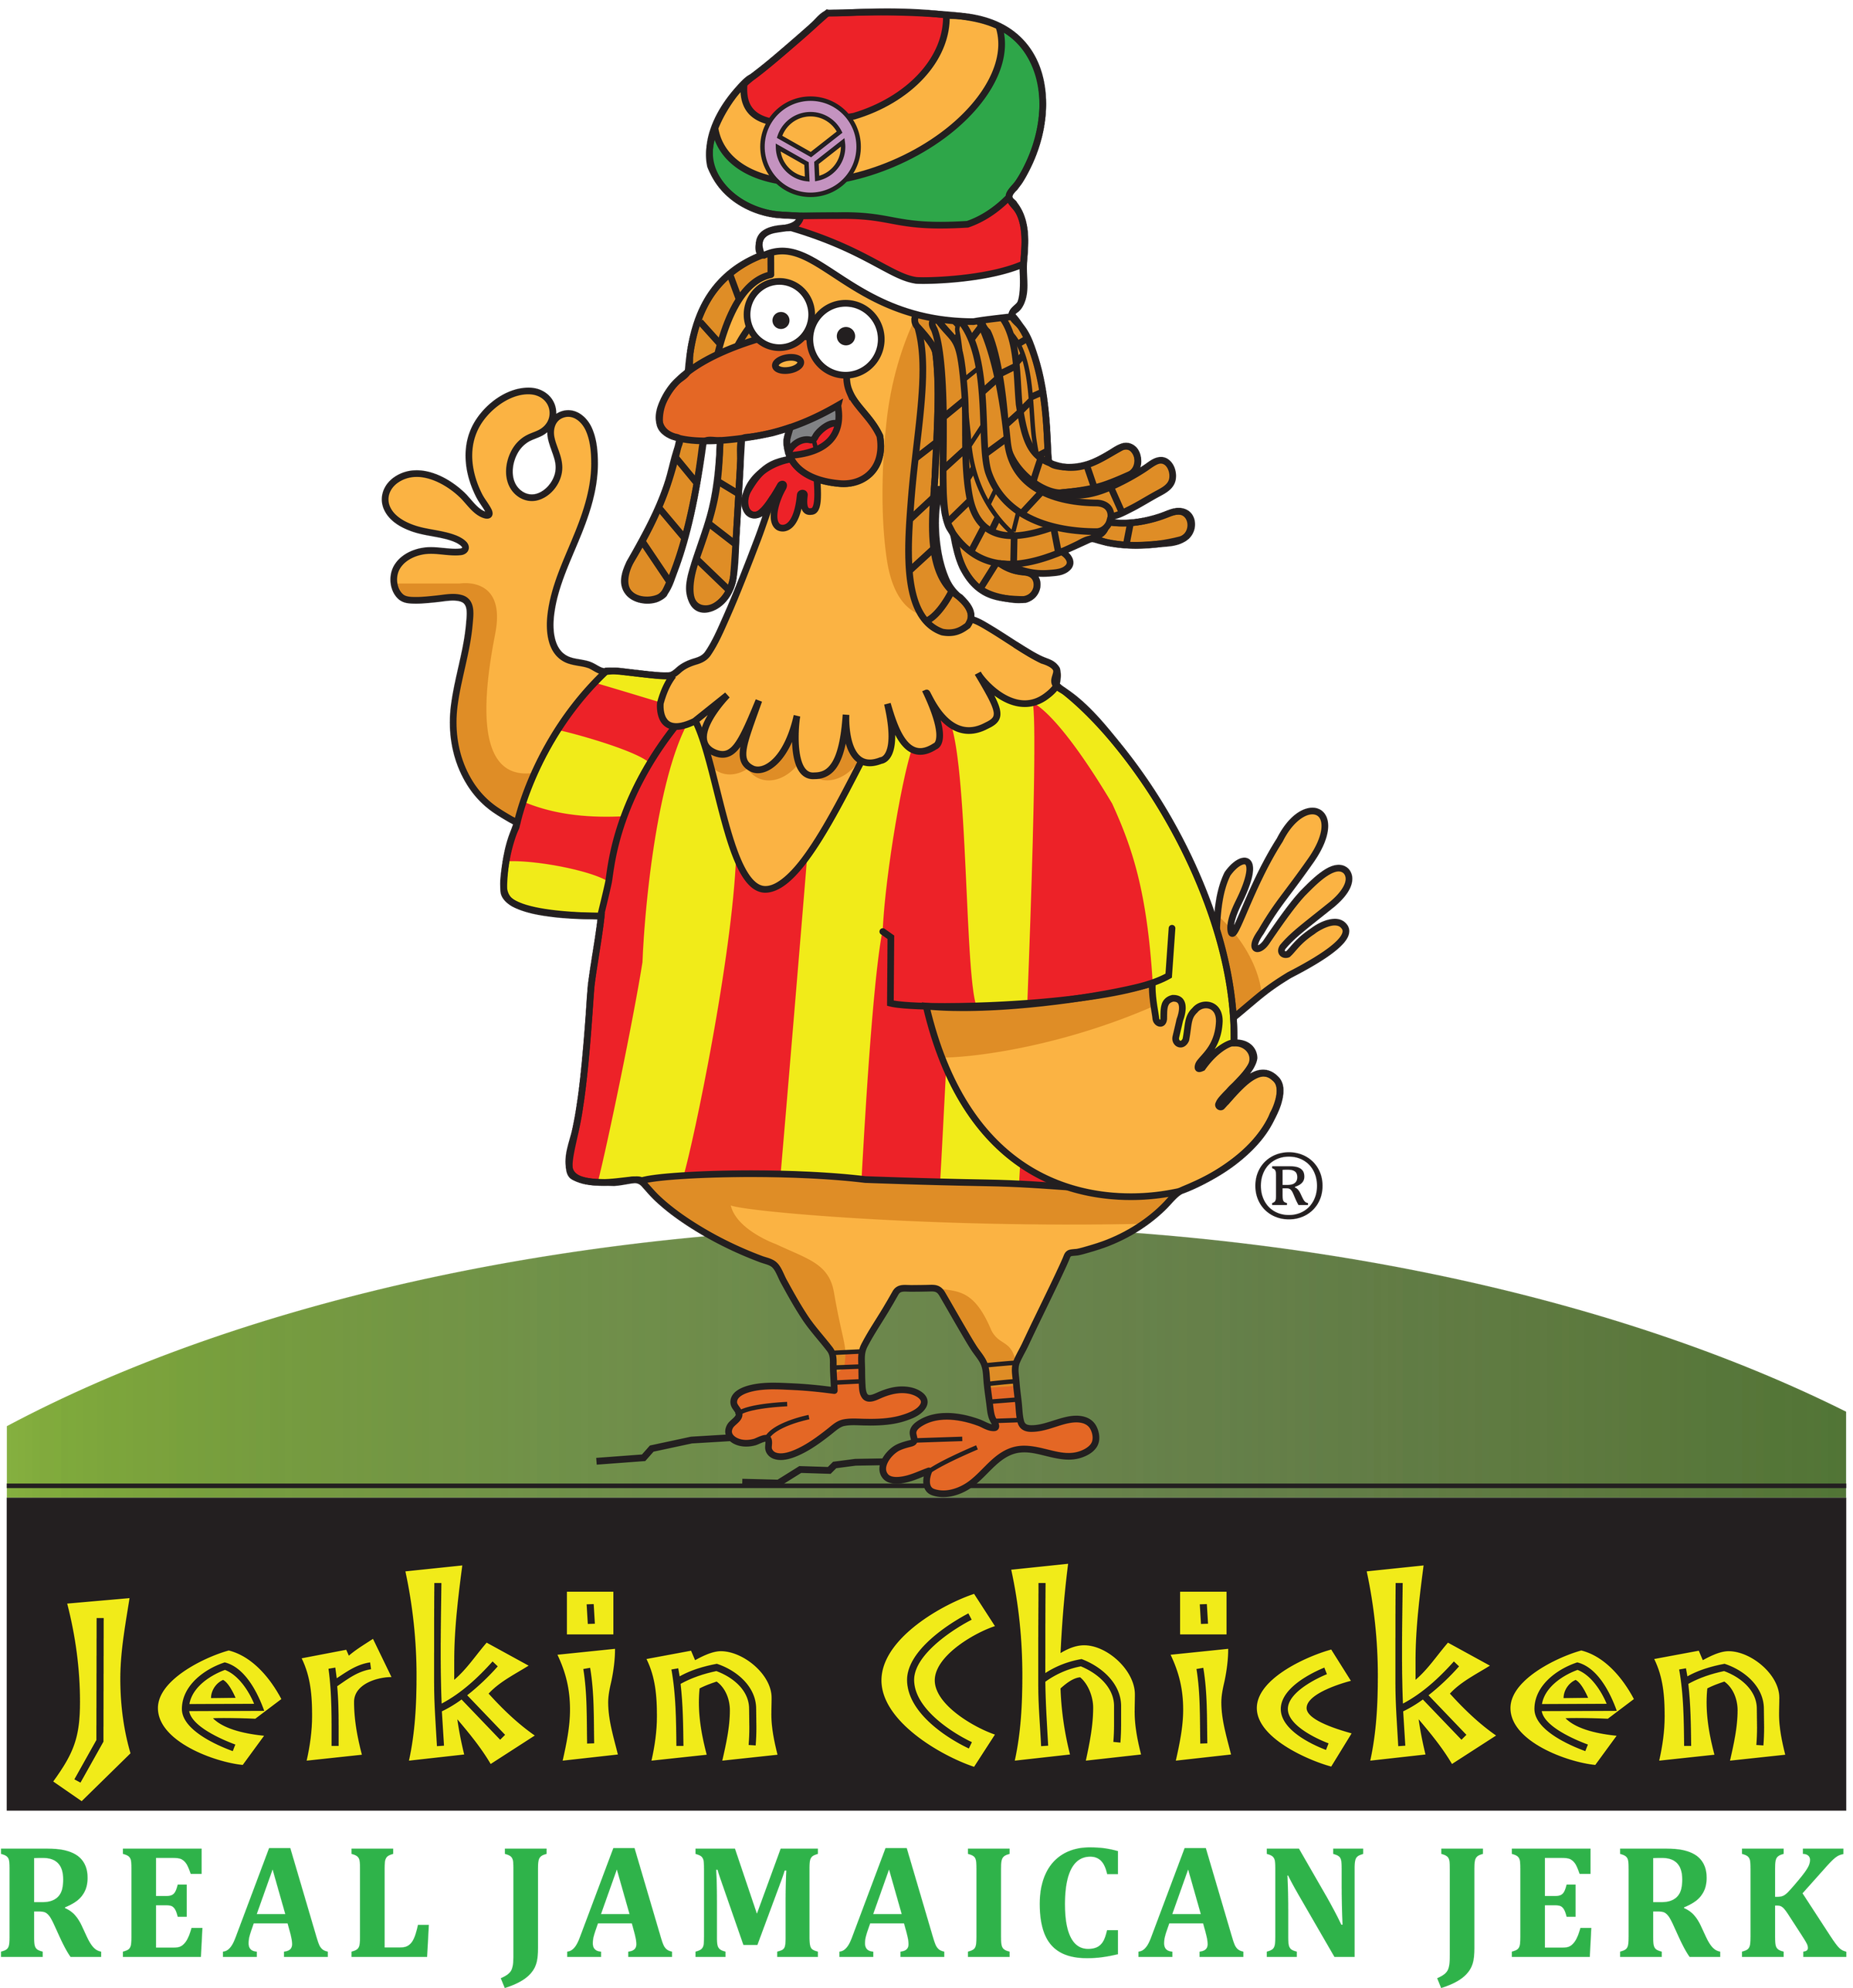 caribbean jerk chicken cartoon